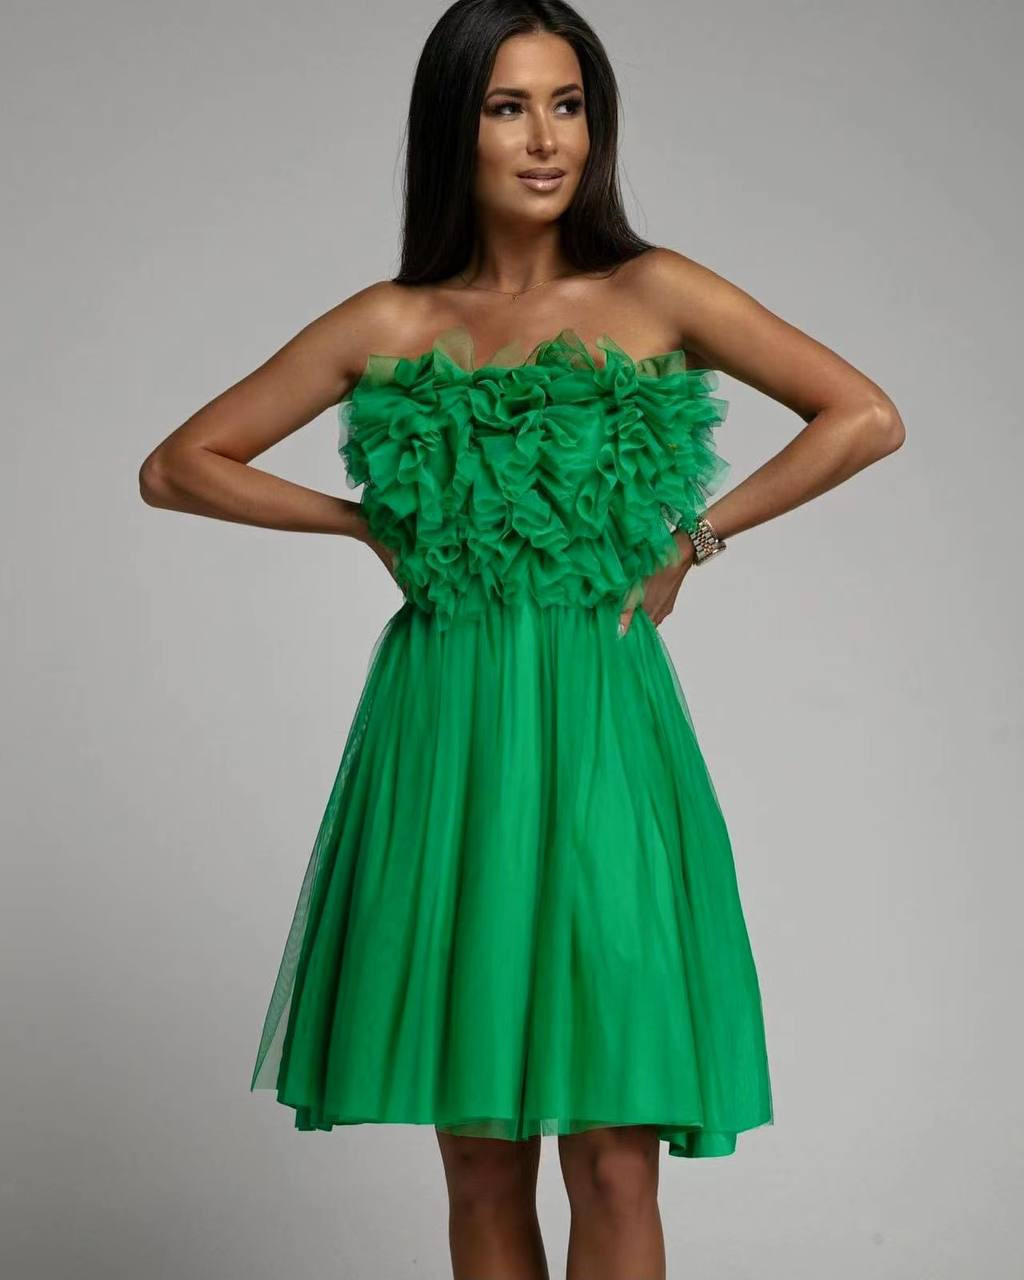 Γυναικείο στραπλες φόρεμα 5126 πράσινο